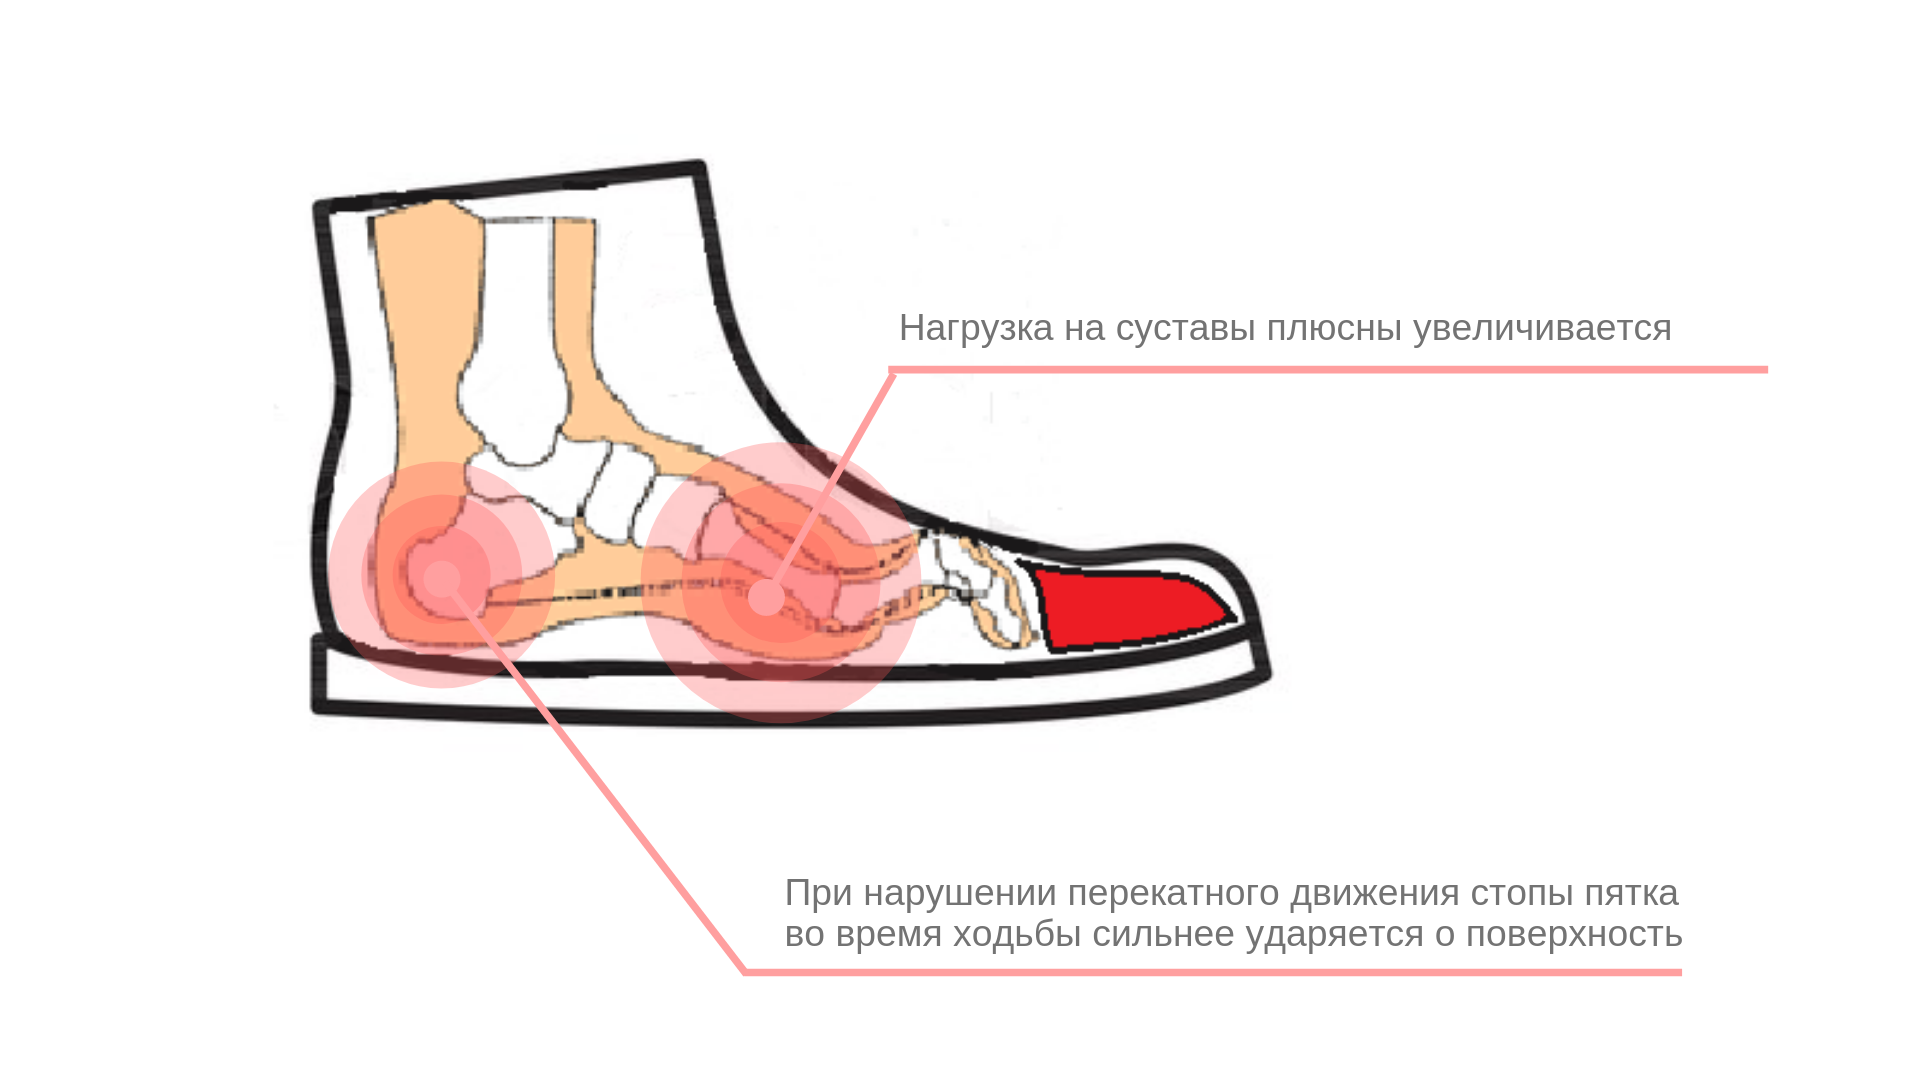 Как понять что обувь не по размеру